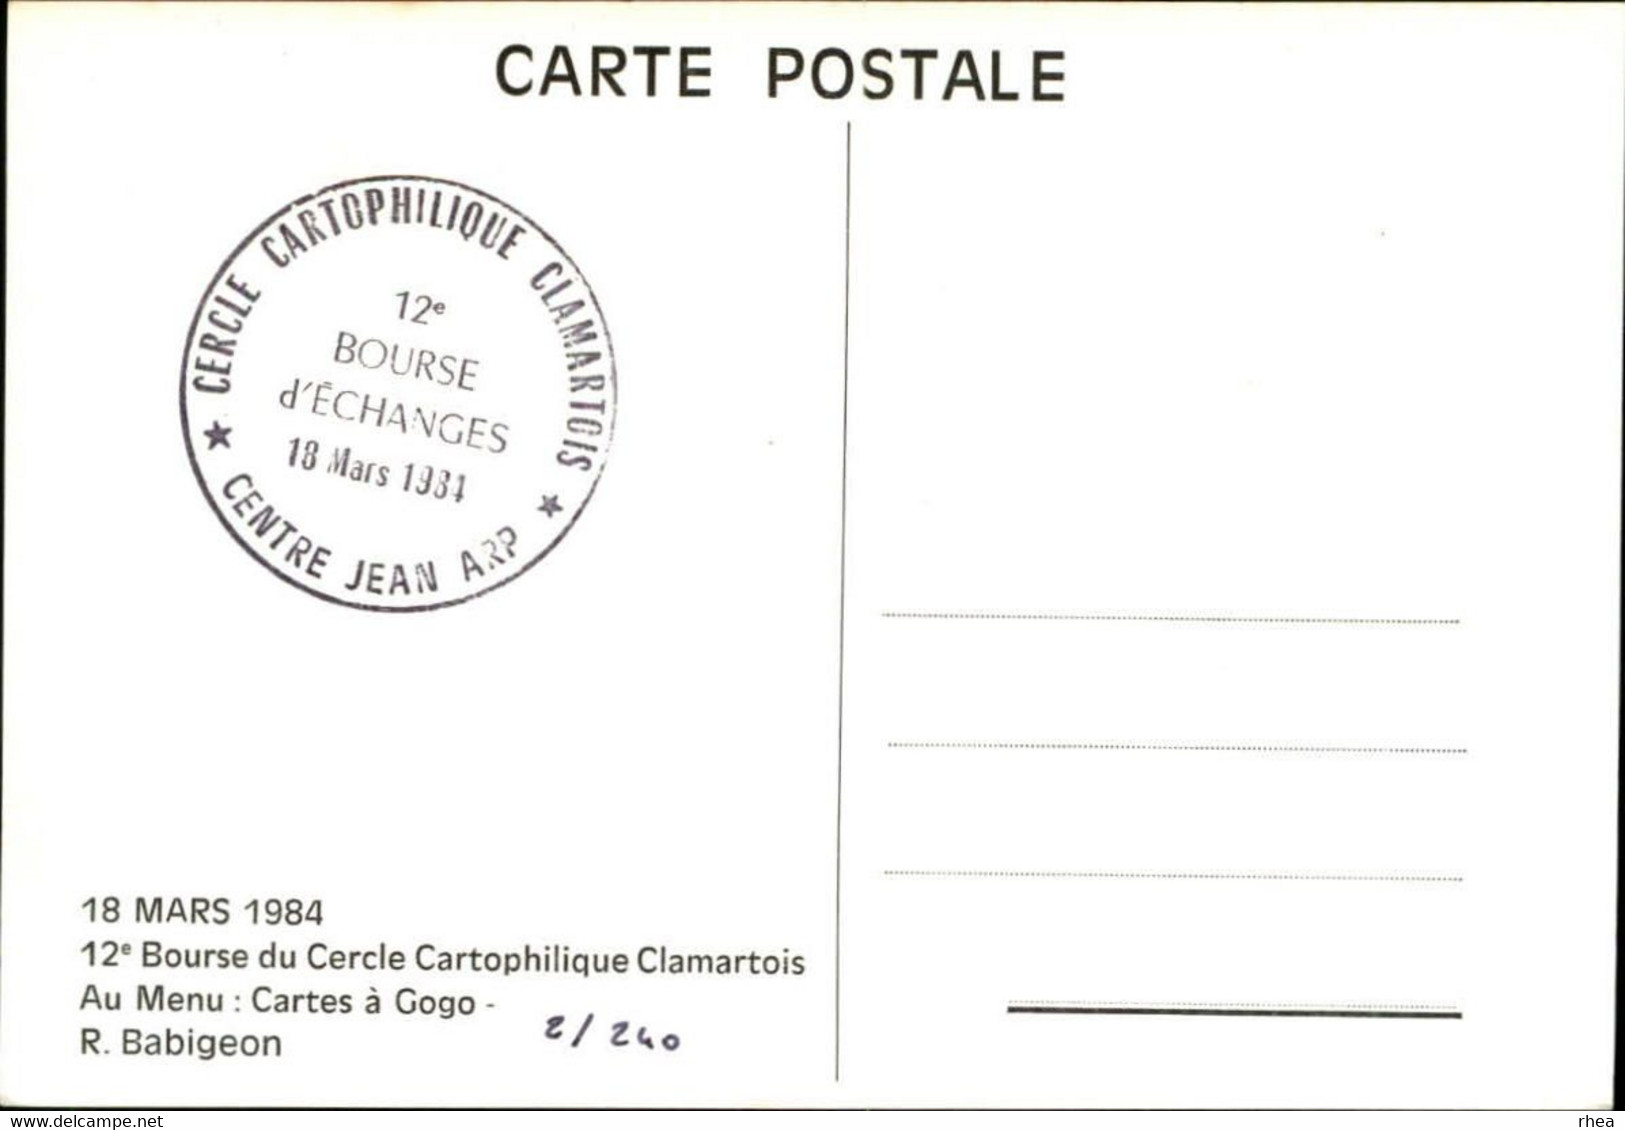 SALONS DE COLLECTIONS - Bourse D'échanges - Salon De Cartes Postales - Clarmart - Dessin De Babigeon - 1984 - Hamburger - Bourses & Salons De Collections